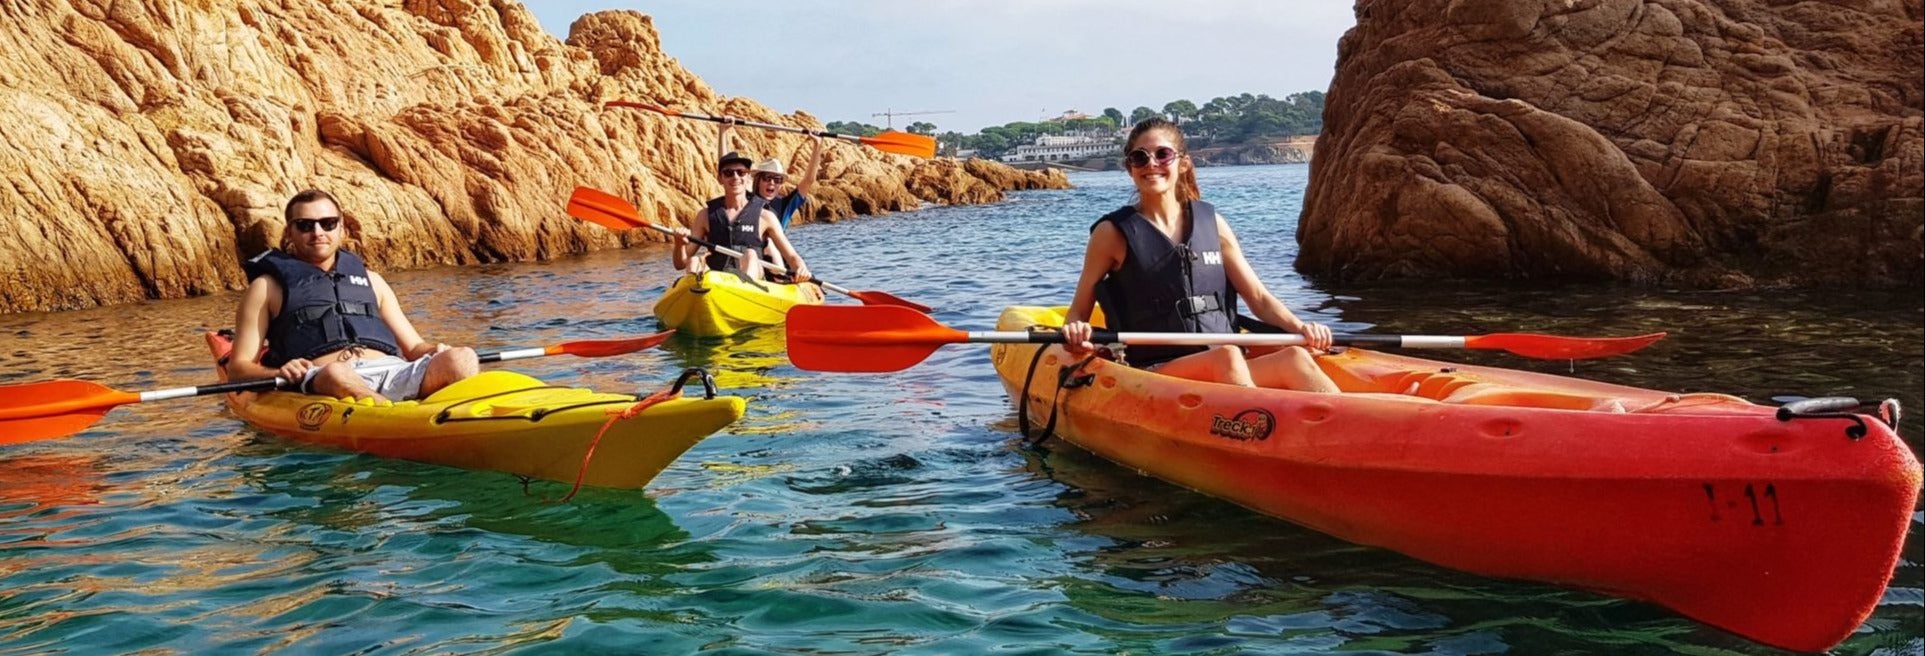 Trilha + Caiaque e snorkel pela Costa Brava